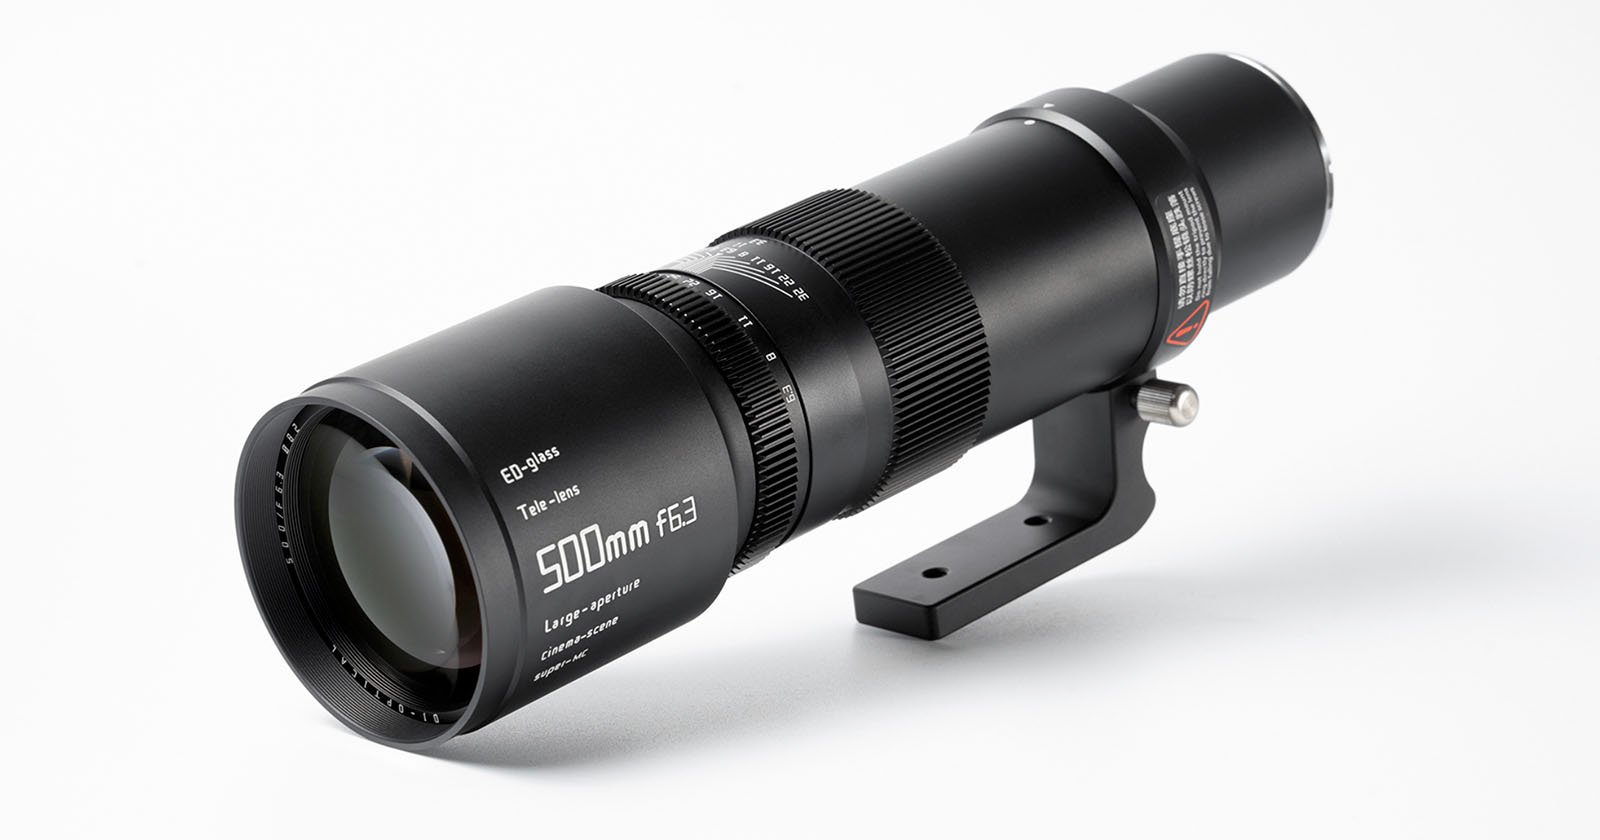 TTArtisans New 500mm f/6.3 Full-Frame Mirrorless Lens is Just $329